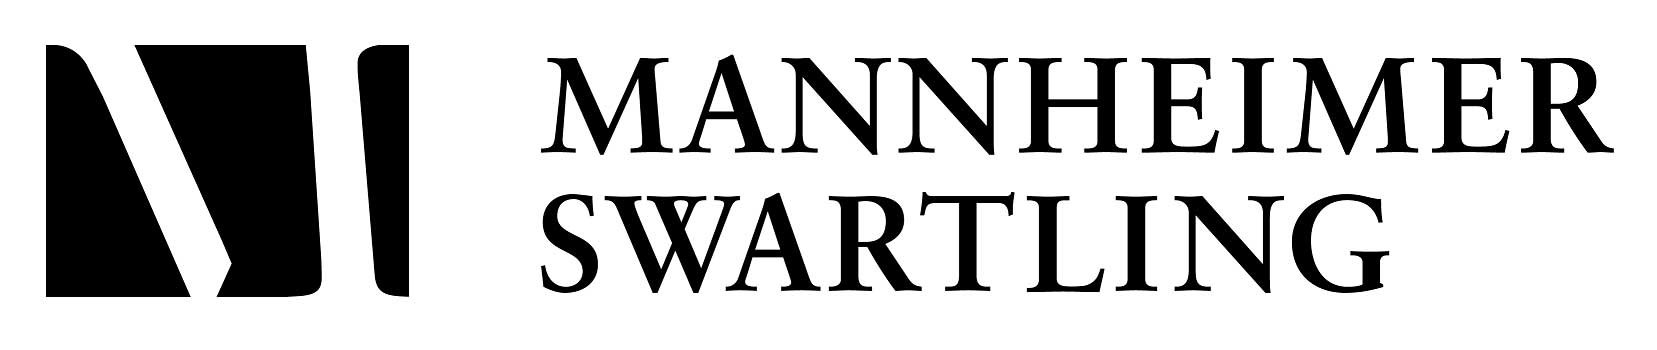 mannheimer swartling logo